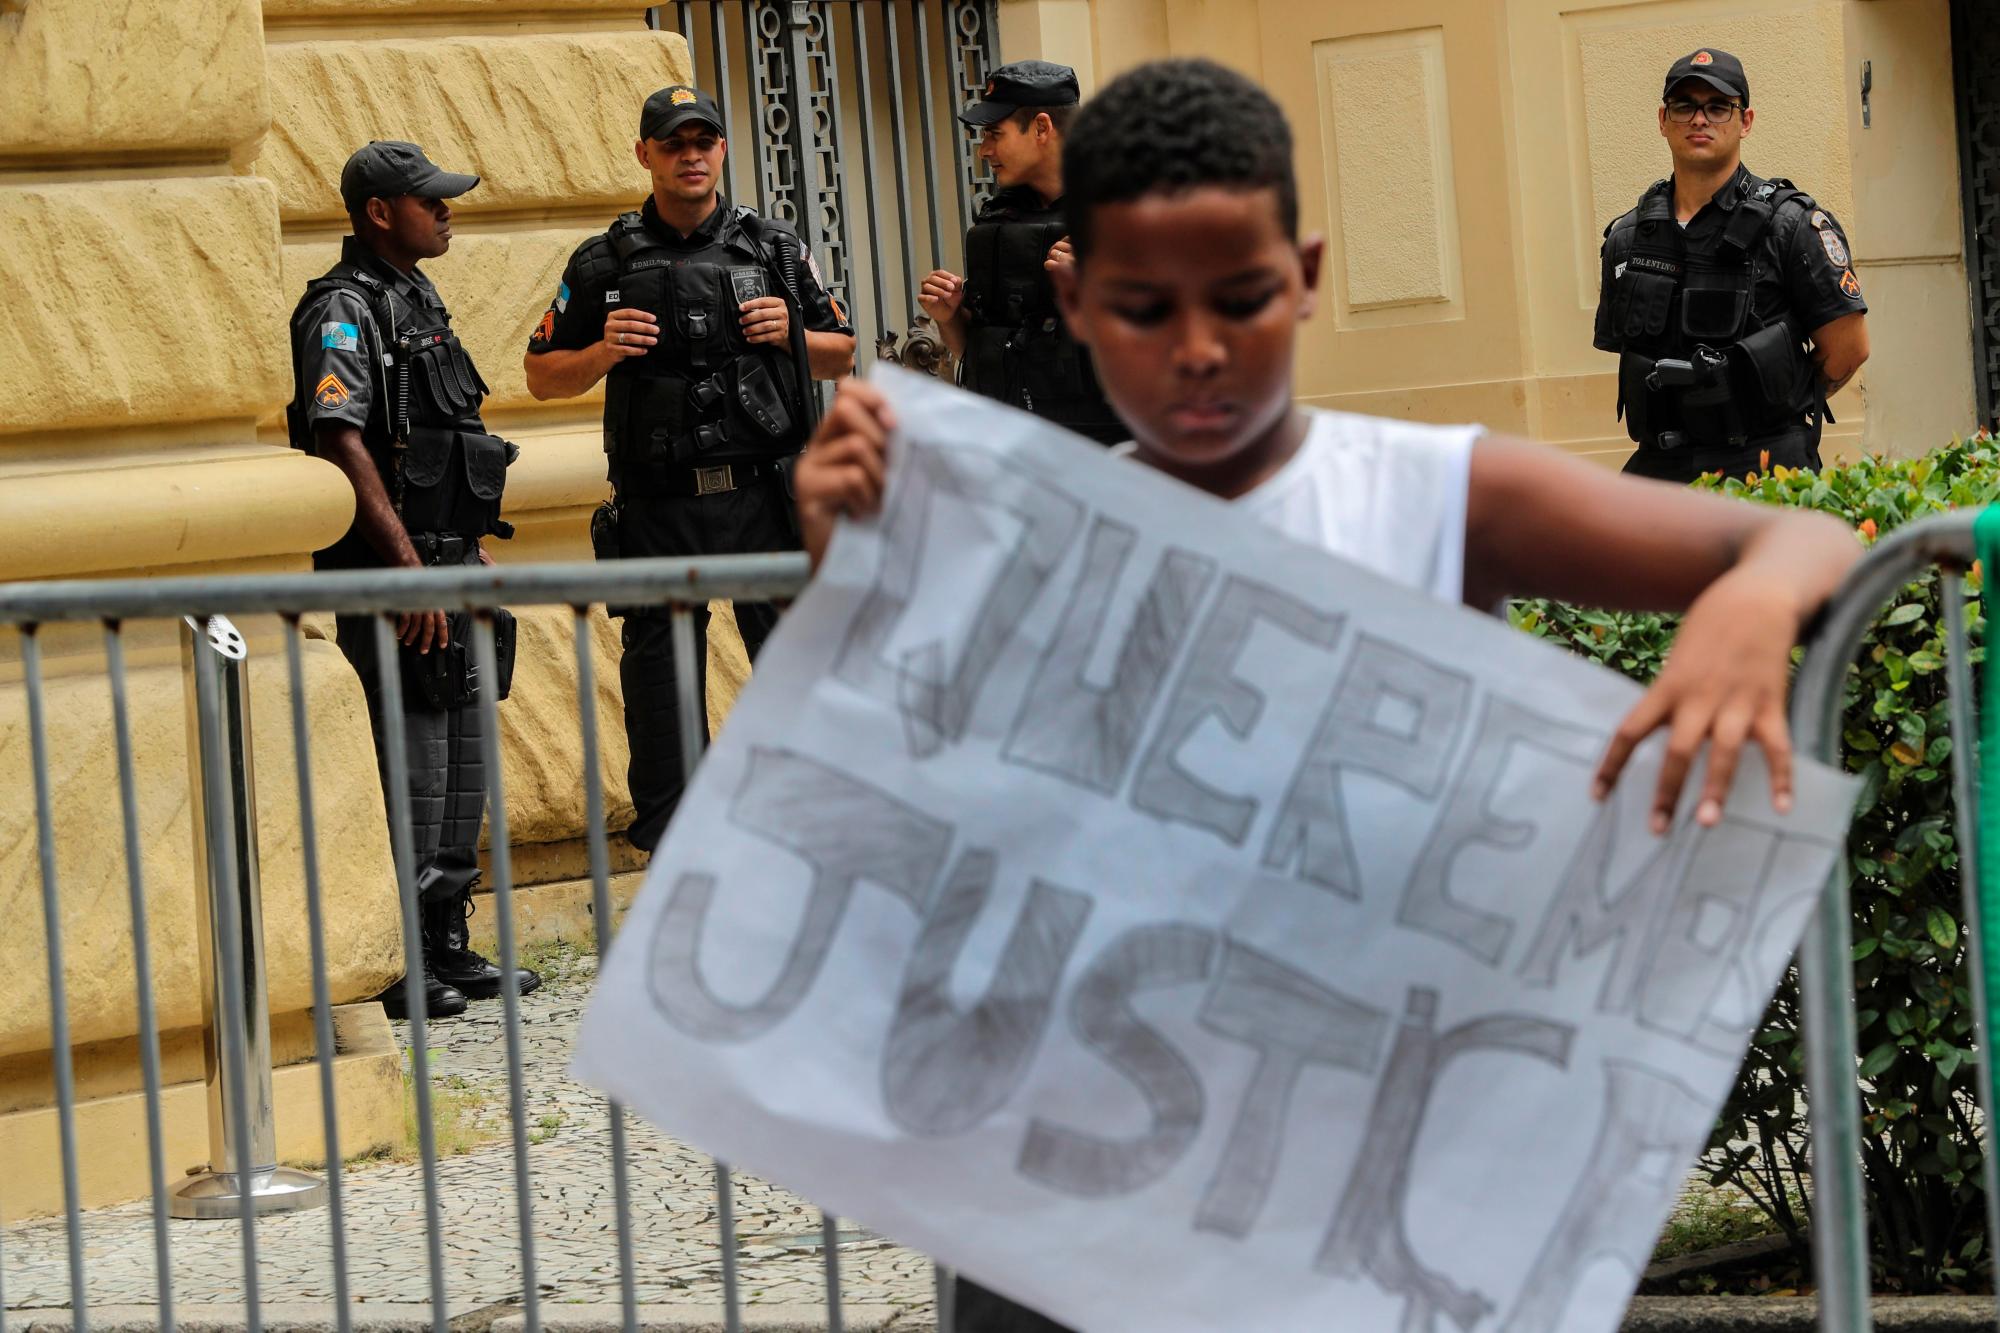 Un adolescente sostiene un cartel en una manifestación para exigir al gobierno del estado de Río de Janeiro el pago de una indemnización a favor de la familia de la niña María Eduarda, de apenas 13 años, que murió por una bala perdida el 30 de marzo de 2017, en una escuela pública durante una acción de la Policía Militar.